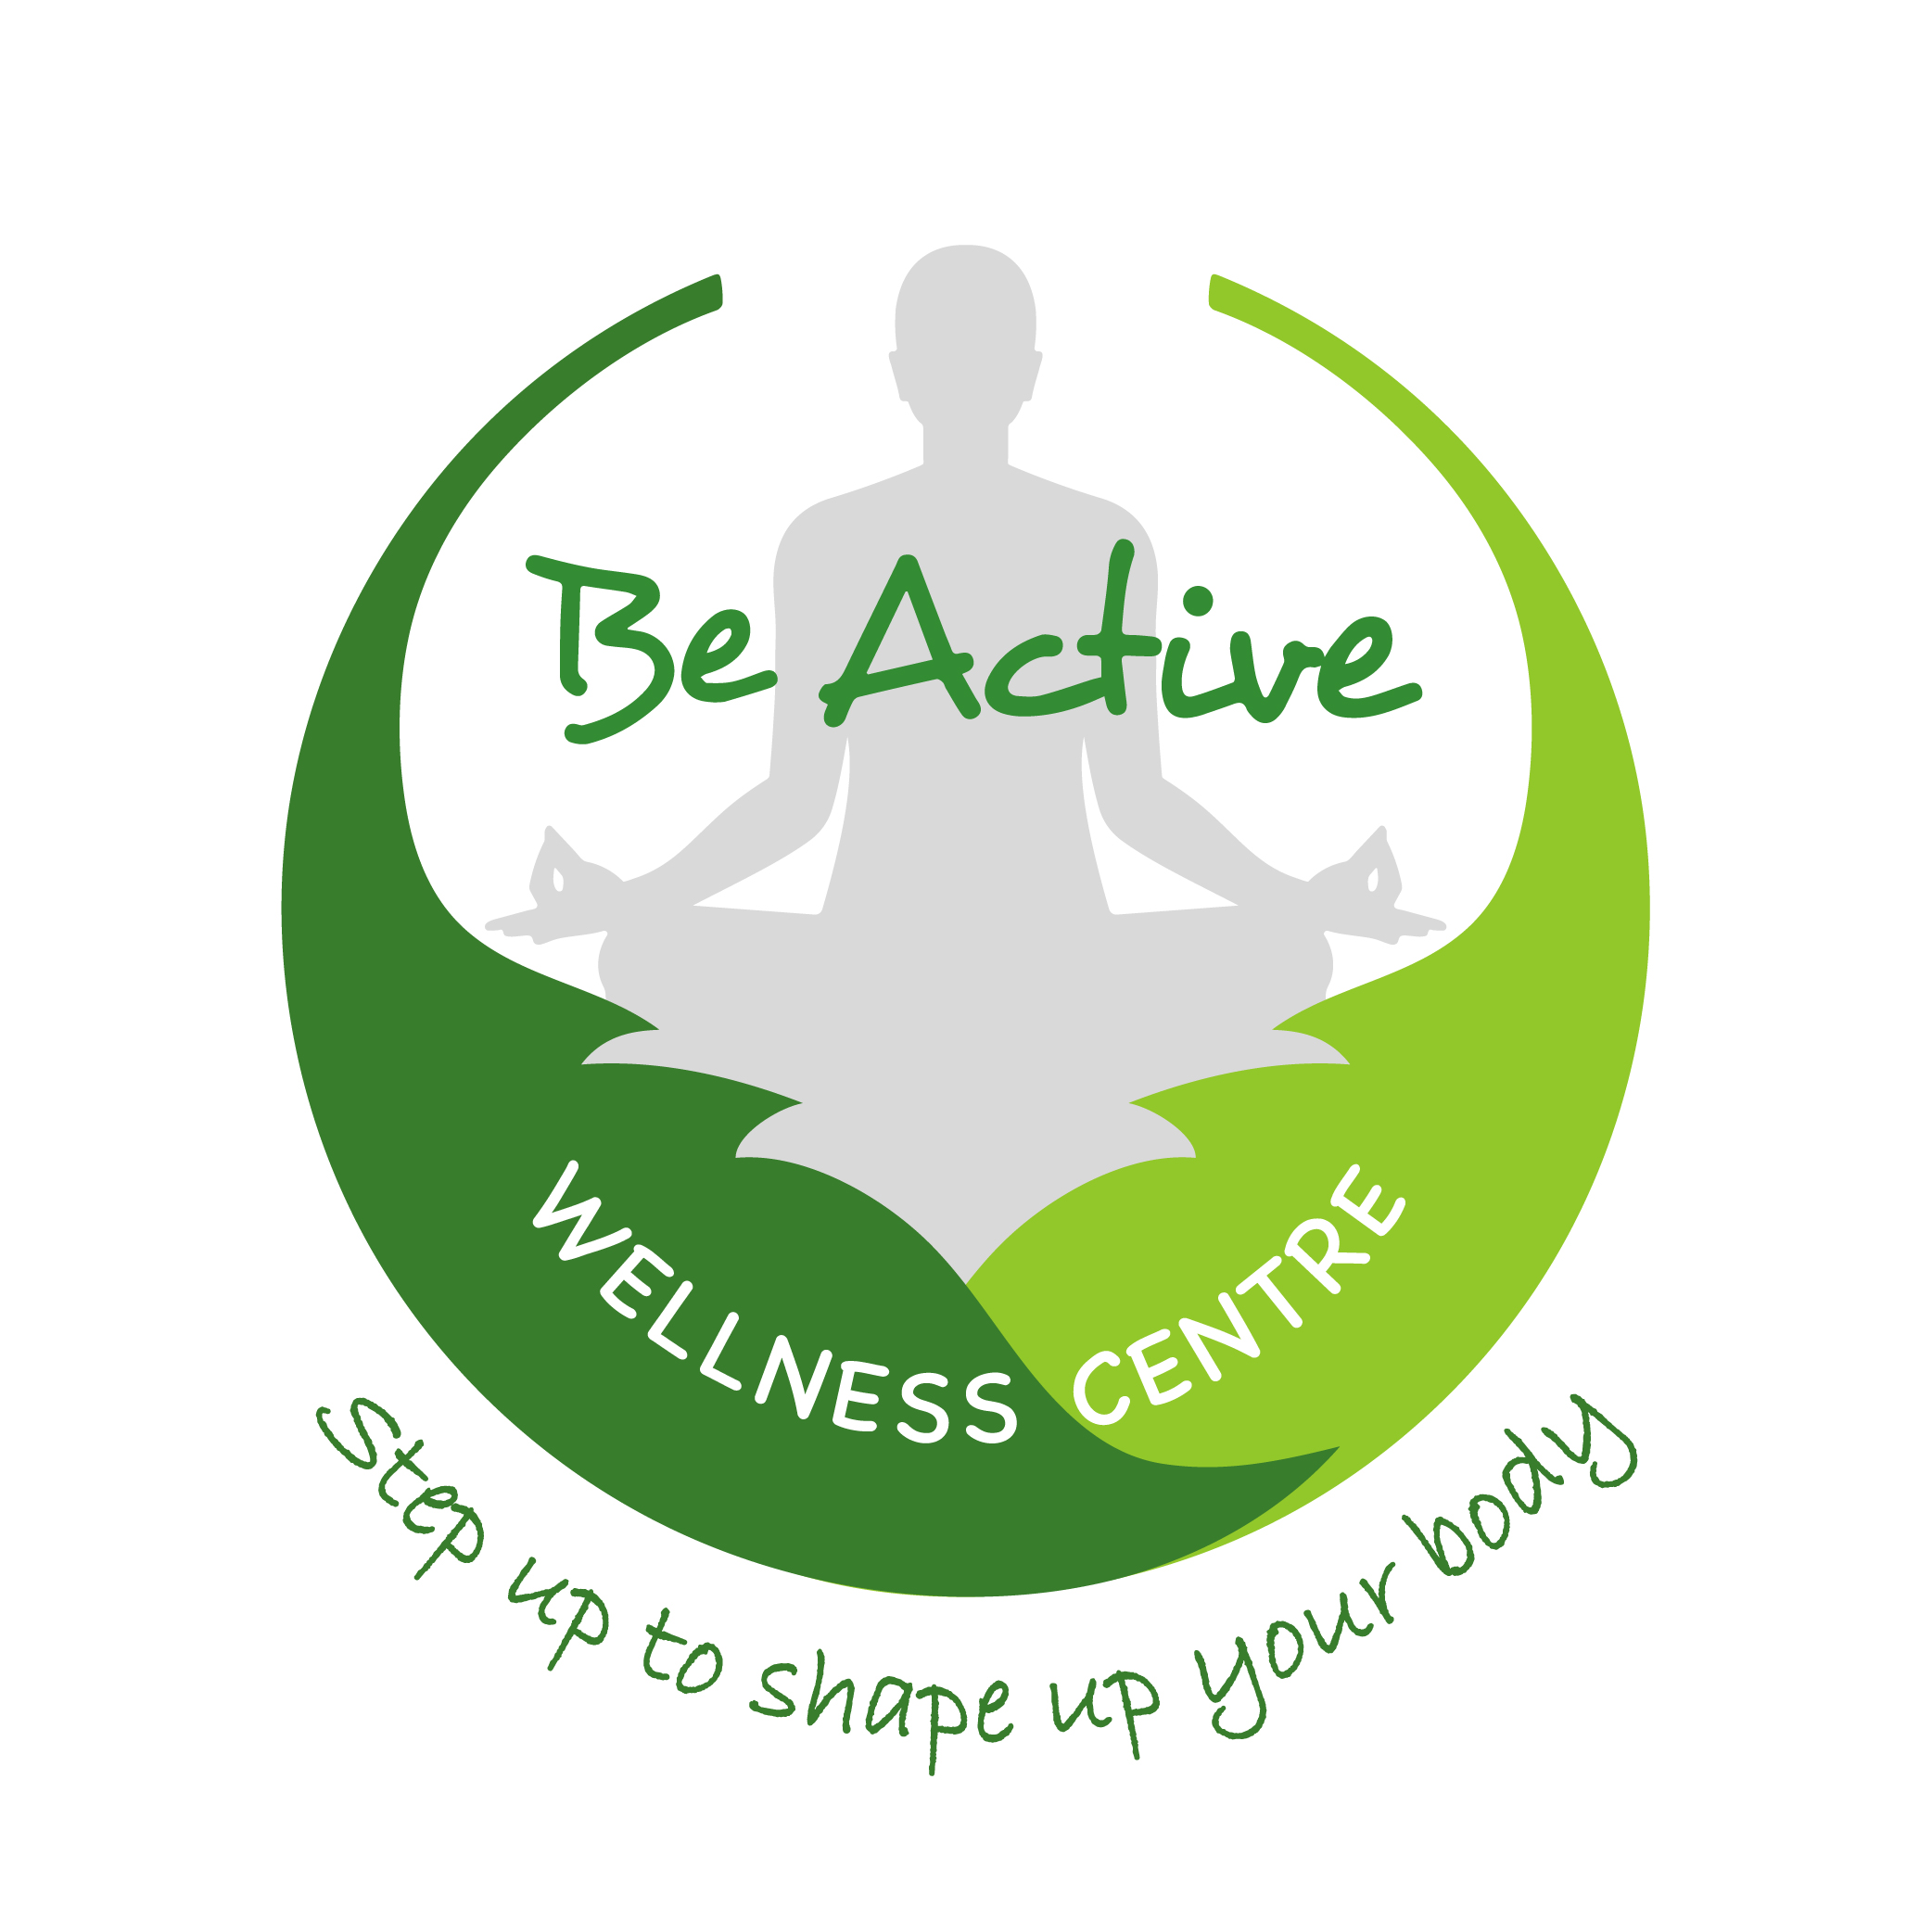 Be Active Wellness Center